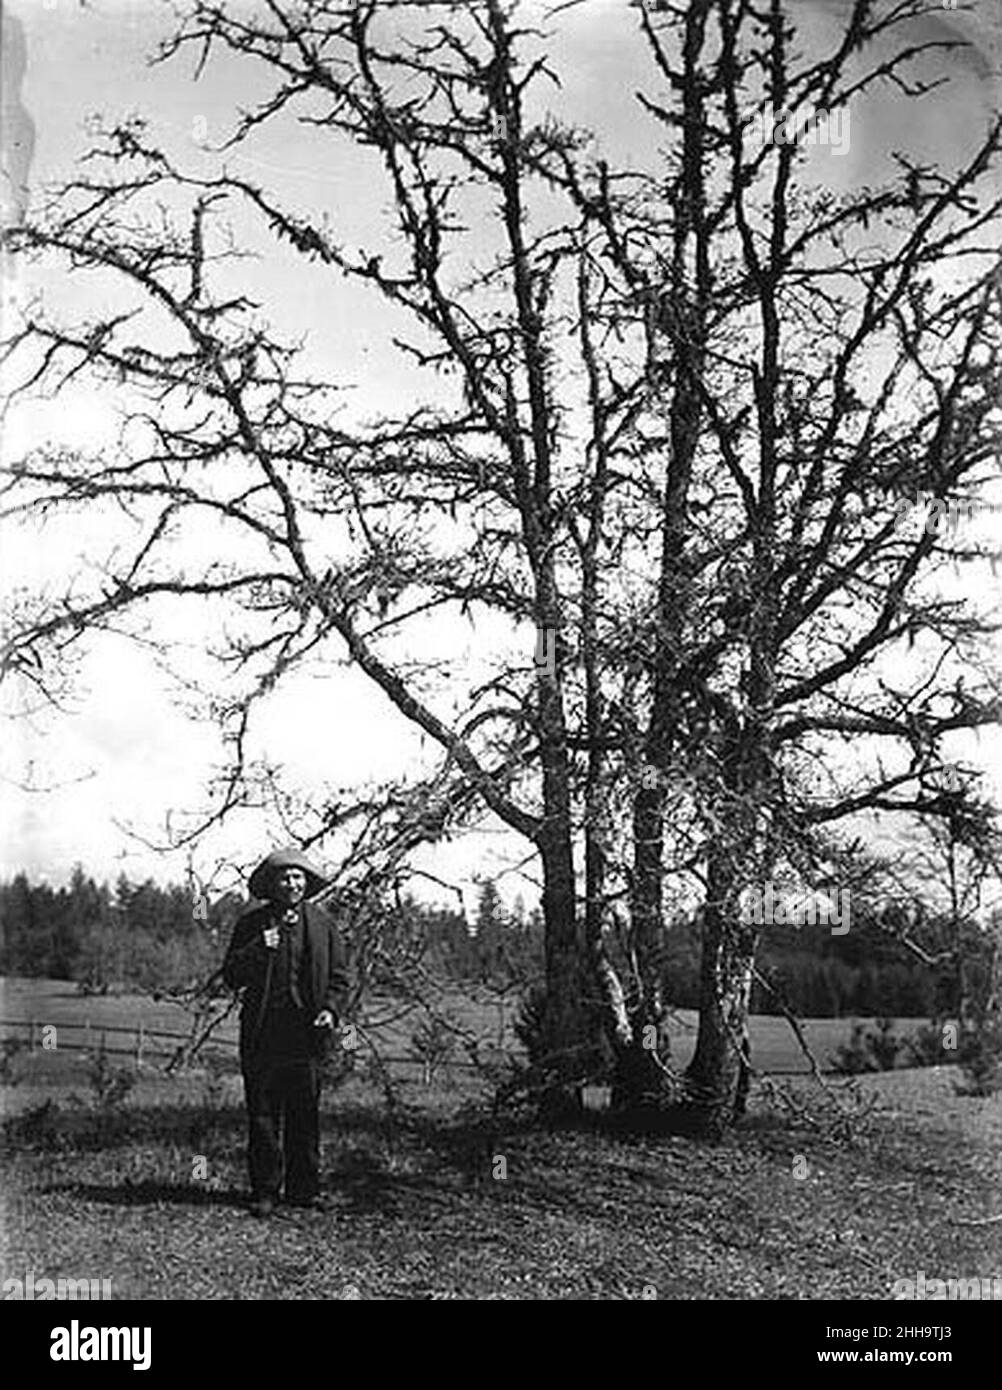 Slugumus Koquilton, Muckleshoot Indian, standing next to oak trees on prairie near Sequalitchew Lake, Washington, April 1906 (BAR 220). Stock Photo